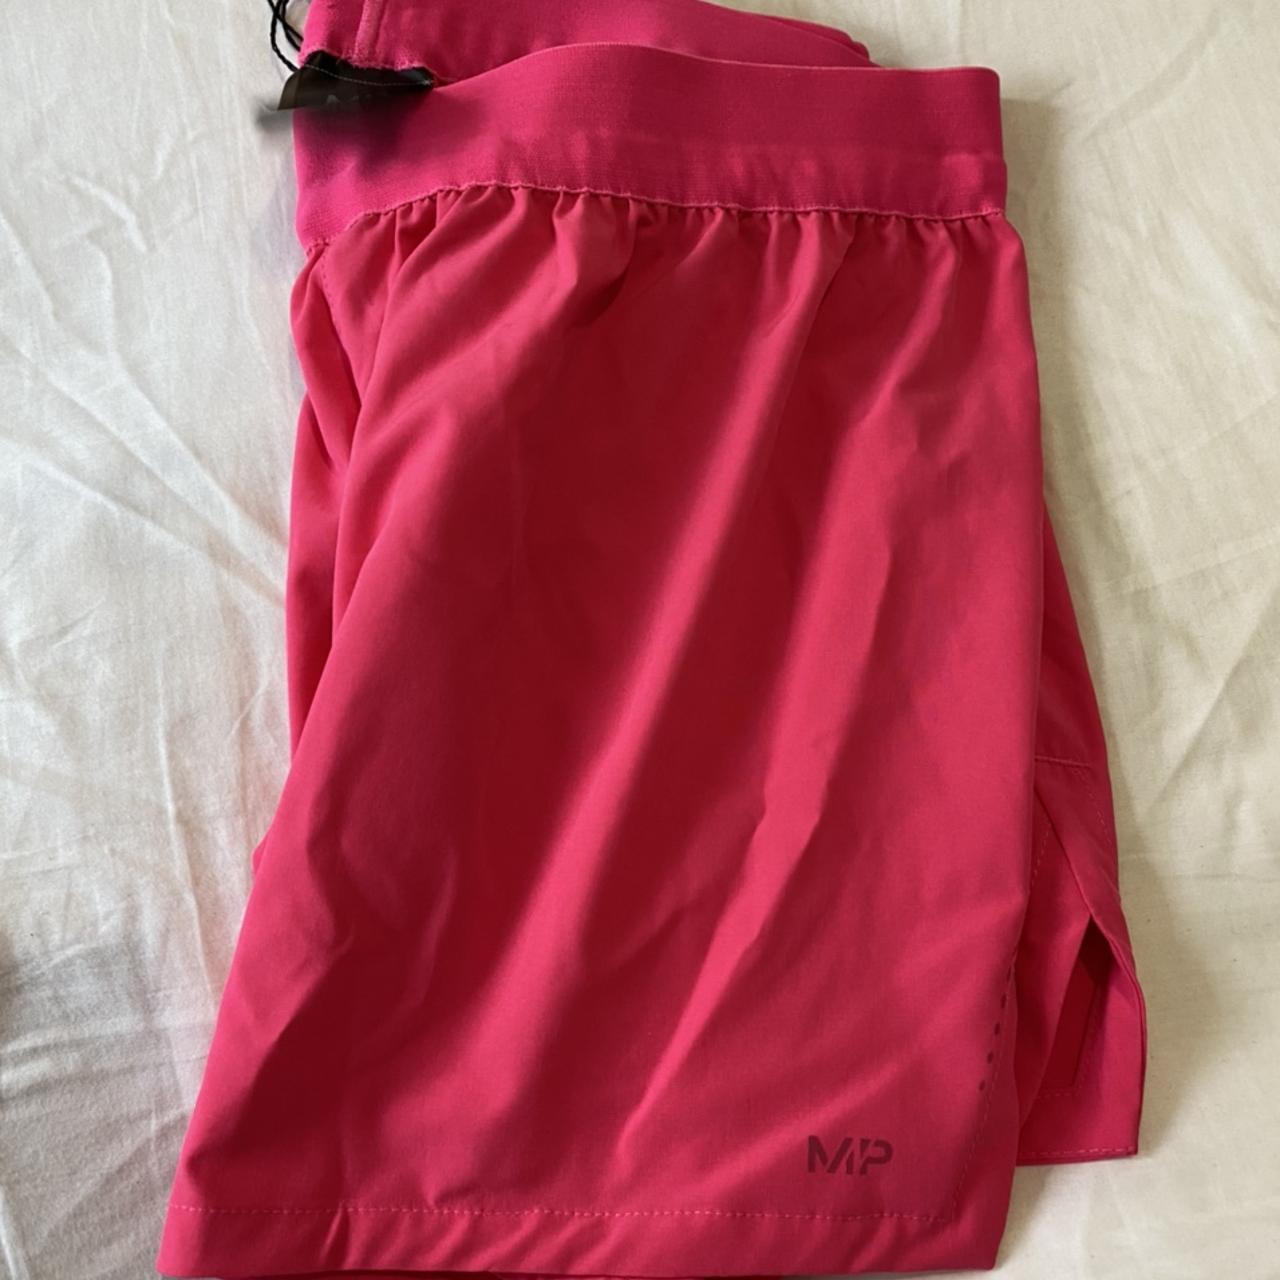 Myprotein bright pink shorts. Never worn. Size XL.... - Depop